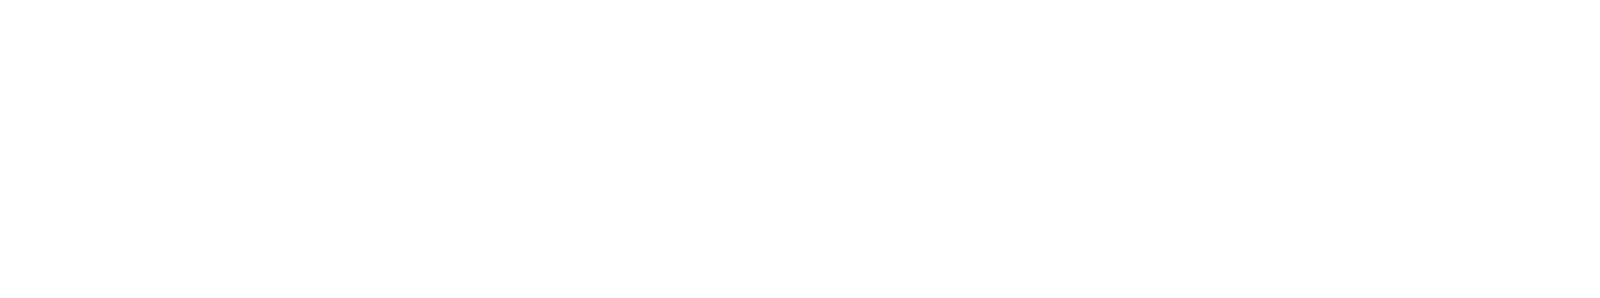 Bank of Communications logo grand pour les fonds sombres (PNG transparent)